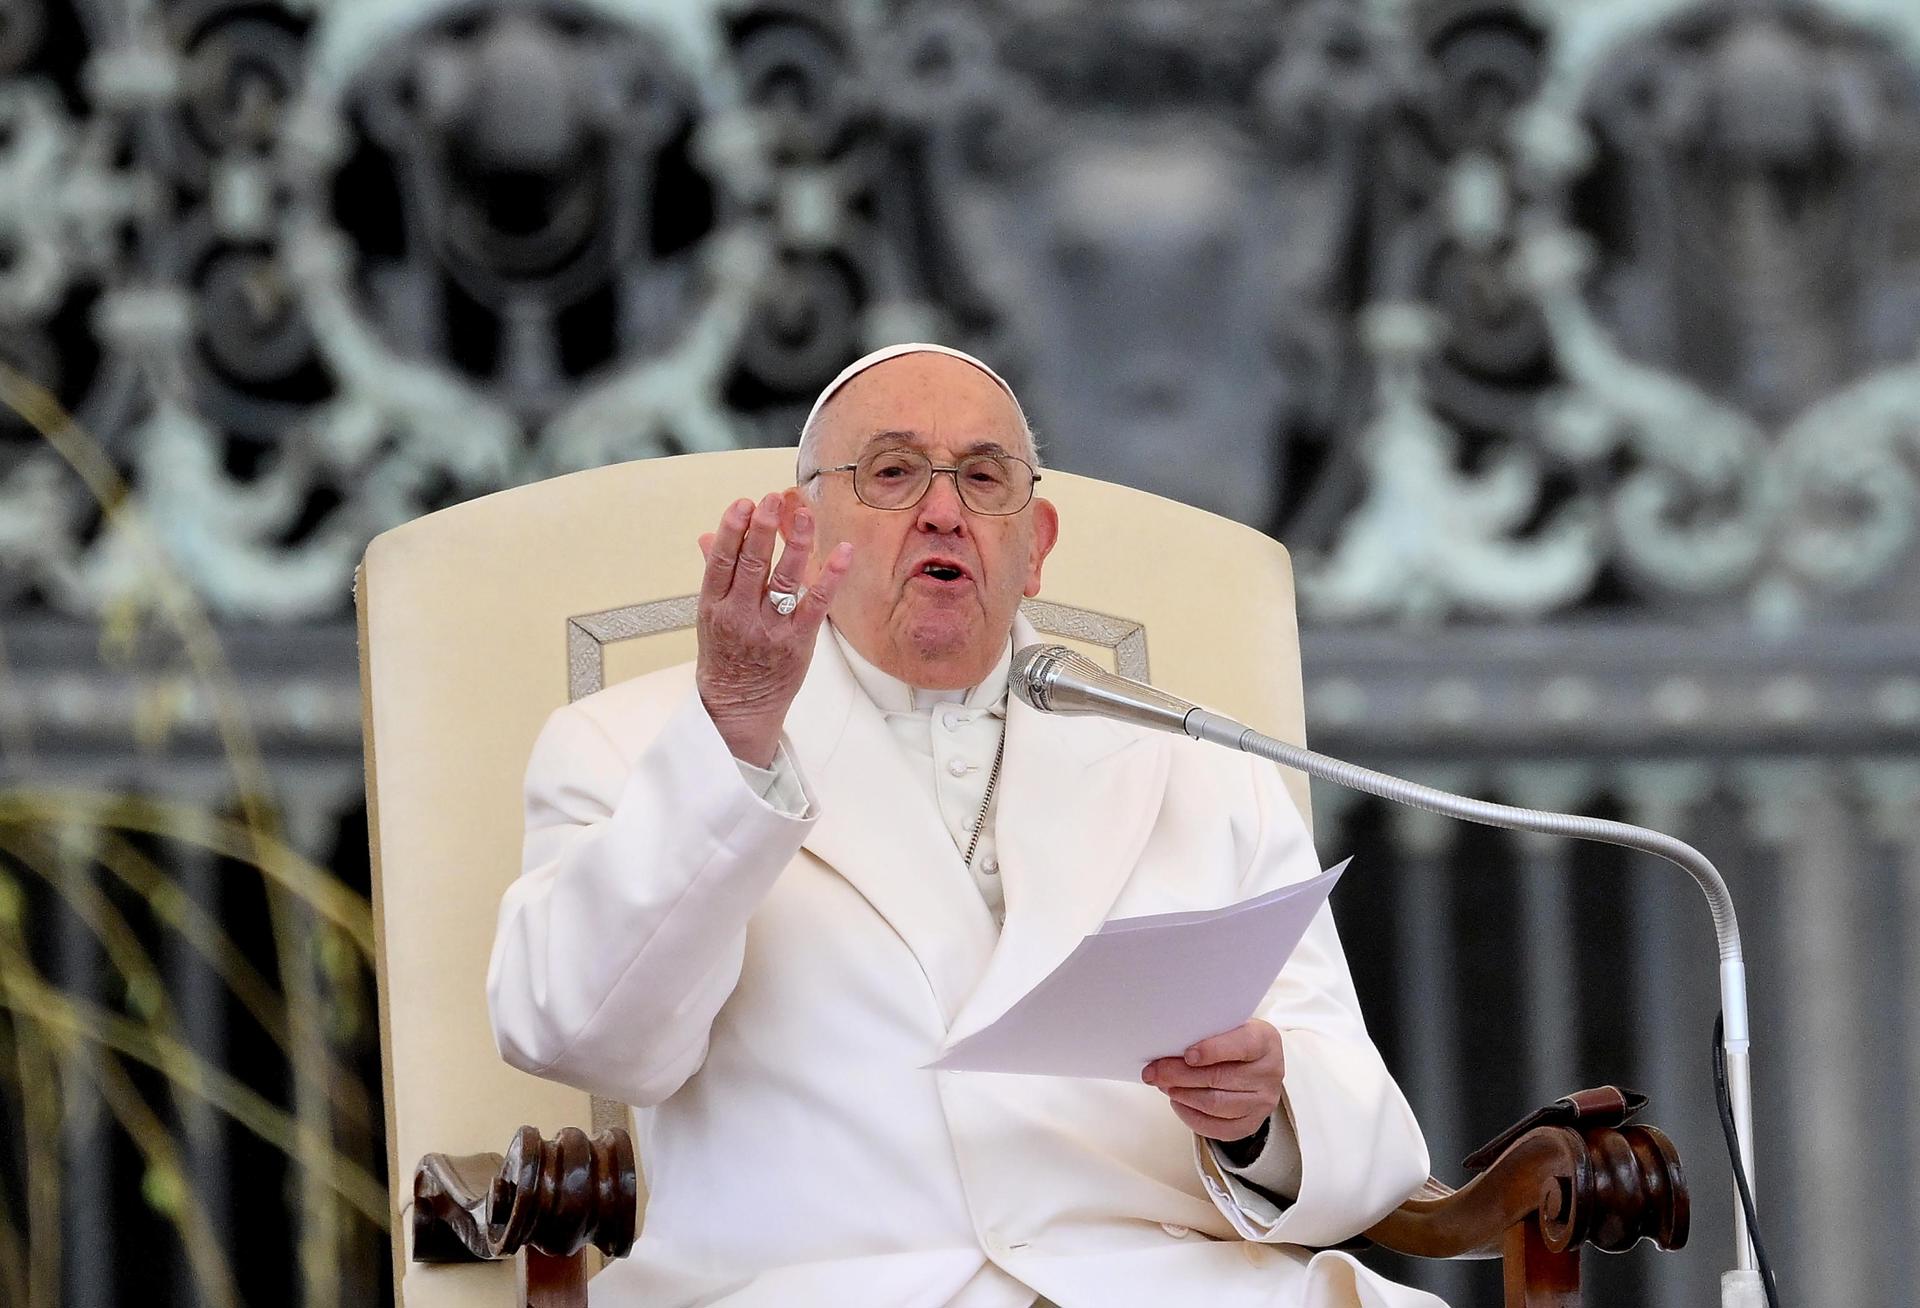 El papa Francisco señala “la fortaleza” para oponerse “a todas las fuerzas oscuras del mundo”